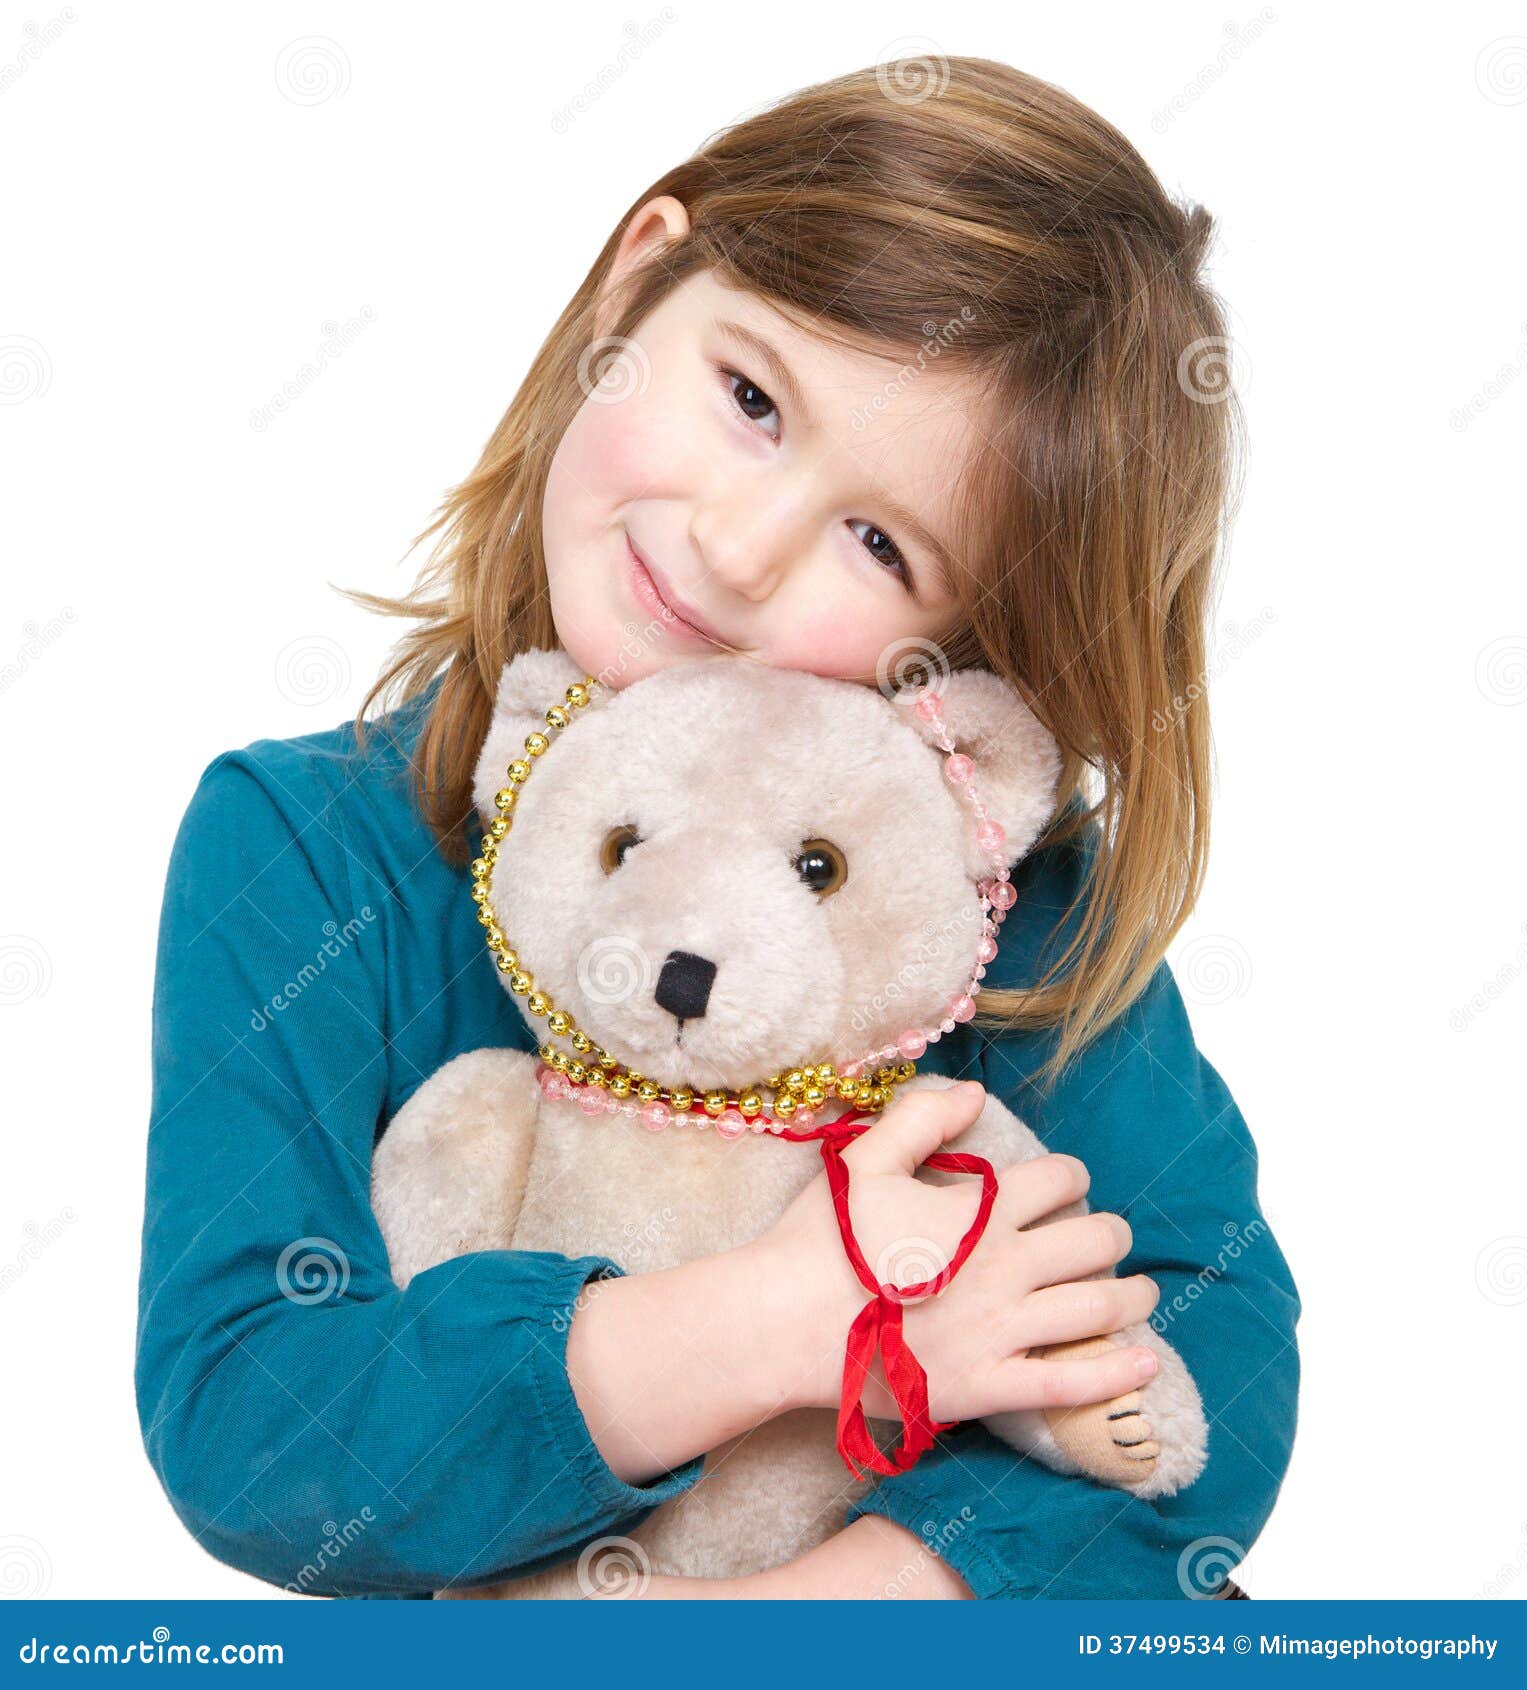 girl holding a teddy bear